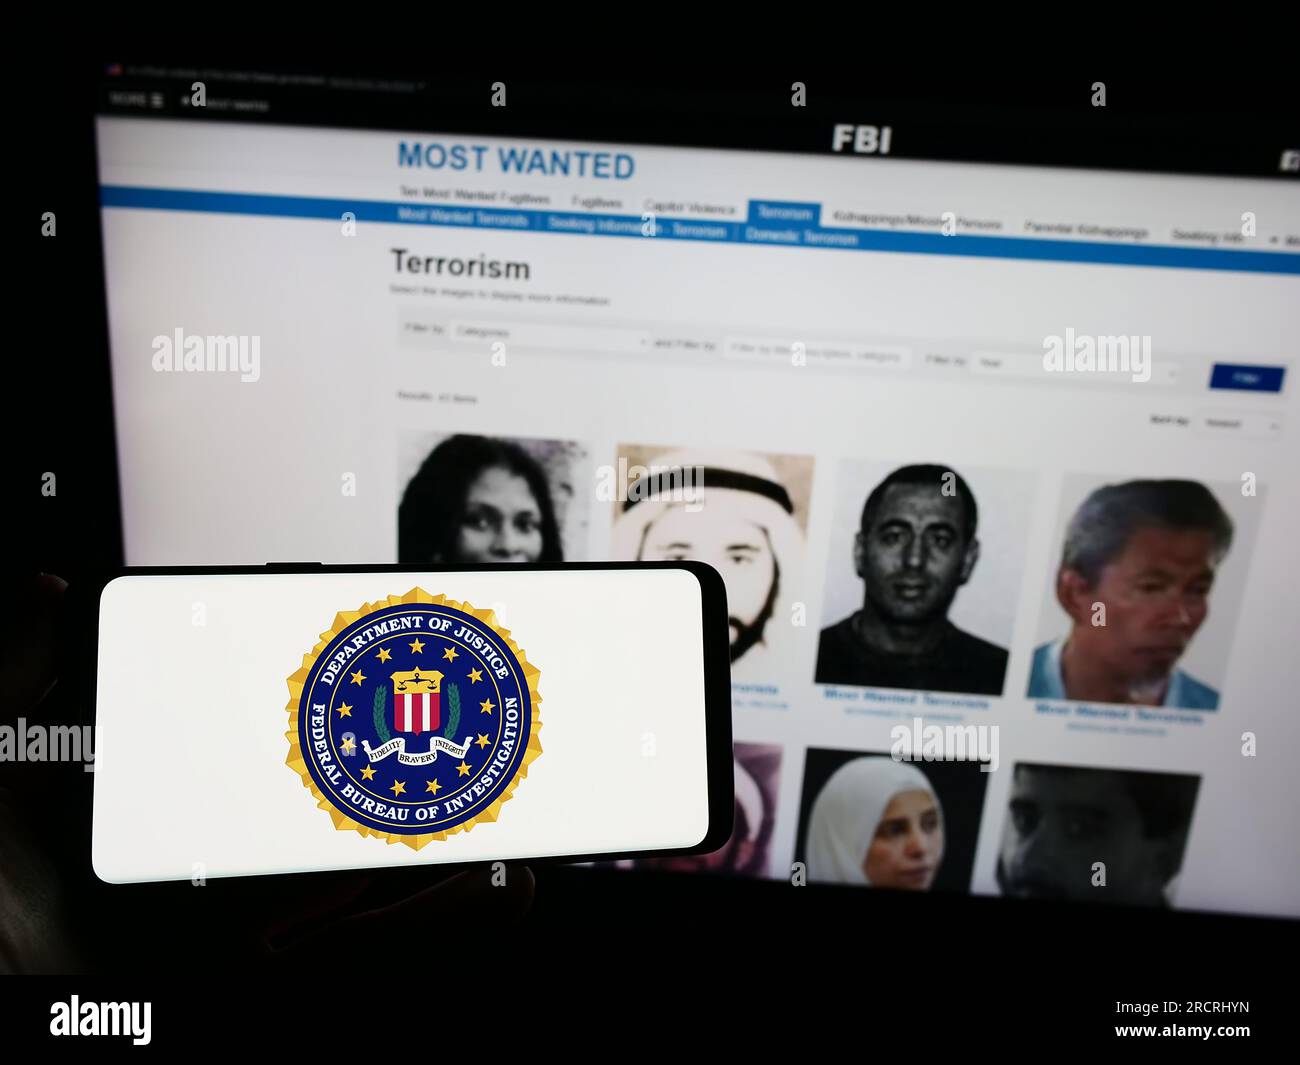 Personne tenant un téléphone portable avec sceau du Federal Bureau of Investigation (FBI) des États-Unis sur l'écran devant la page Web. Concentrez-vous sur l'affichage du téléphone. Banque D'Images